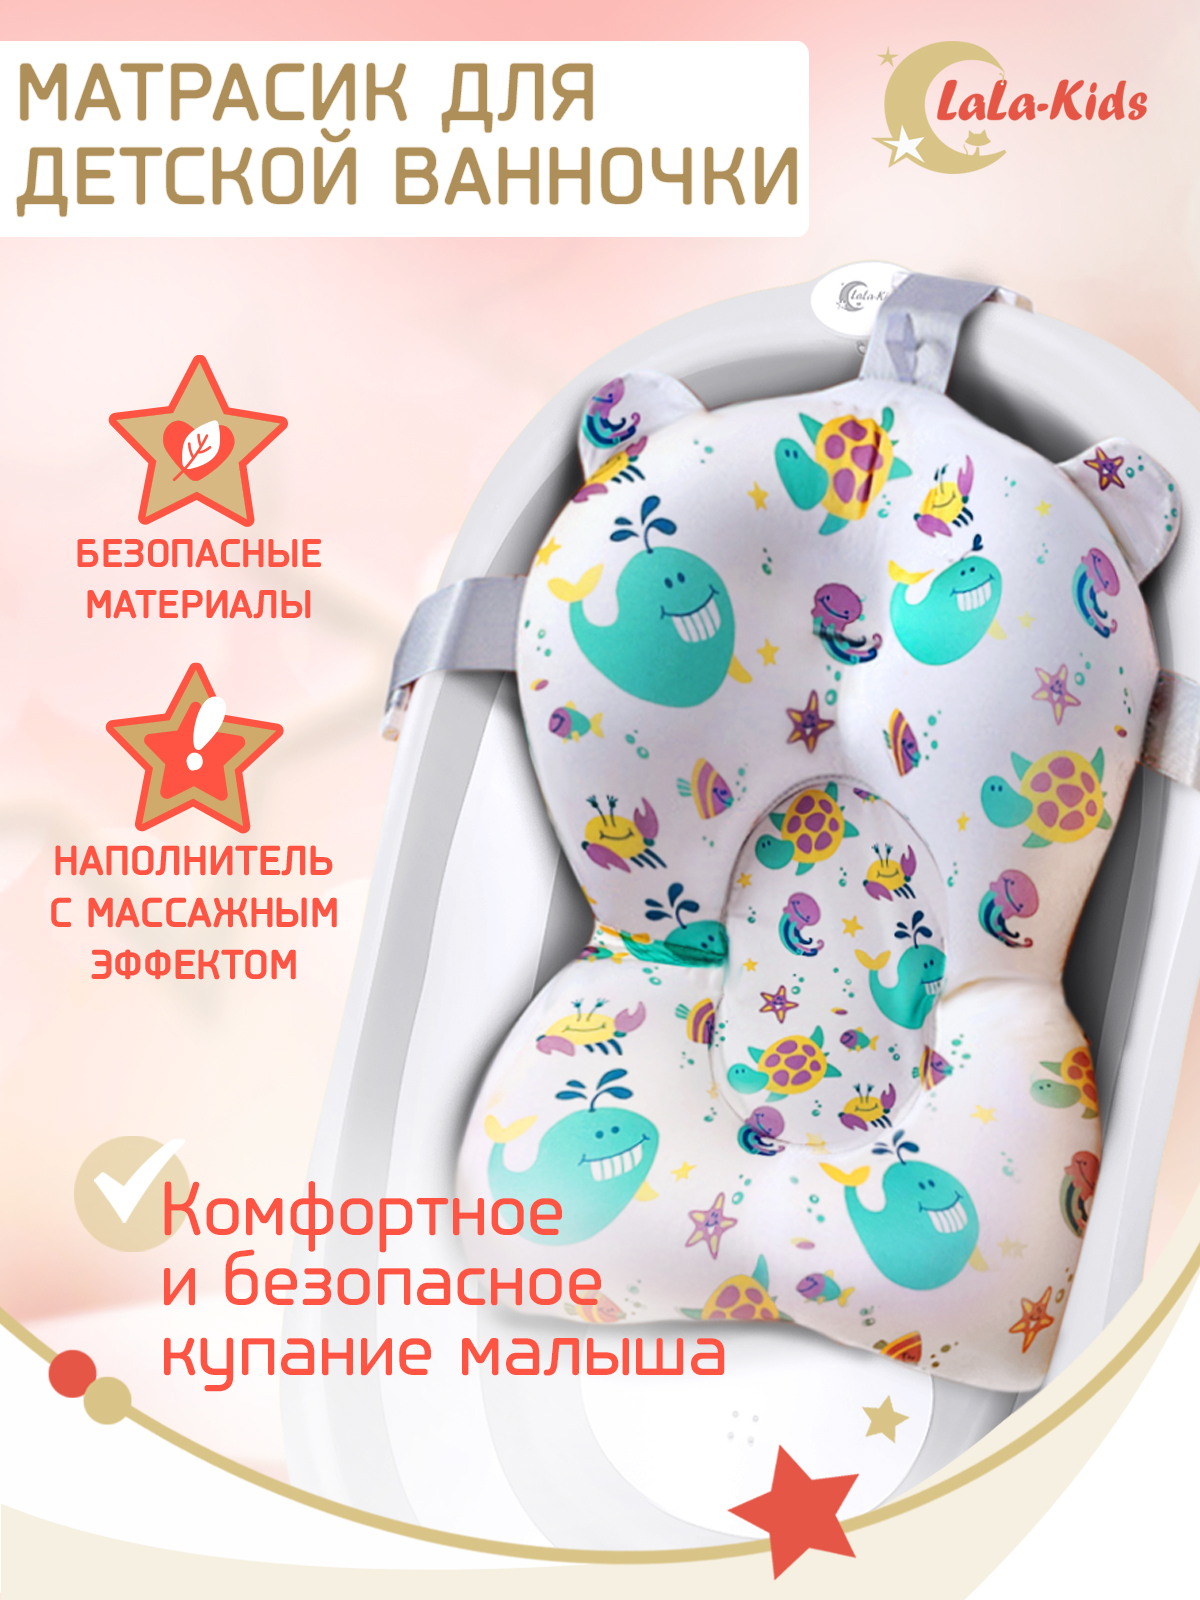 Матрасик для детской ванночки LaLa-Kids для купания новорожденных - фото 2